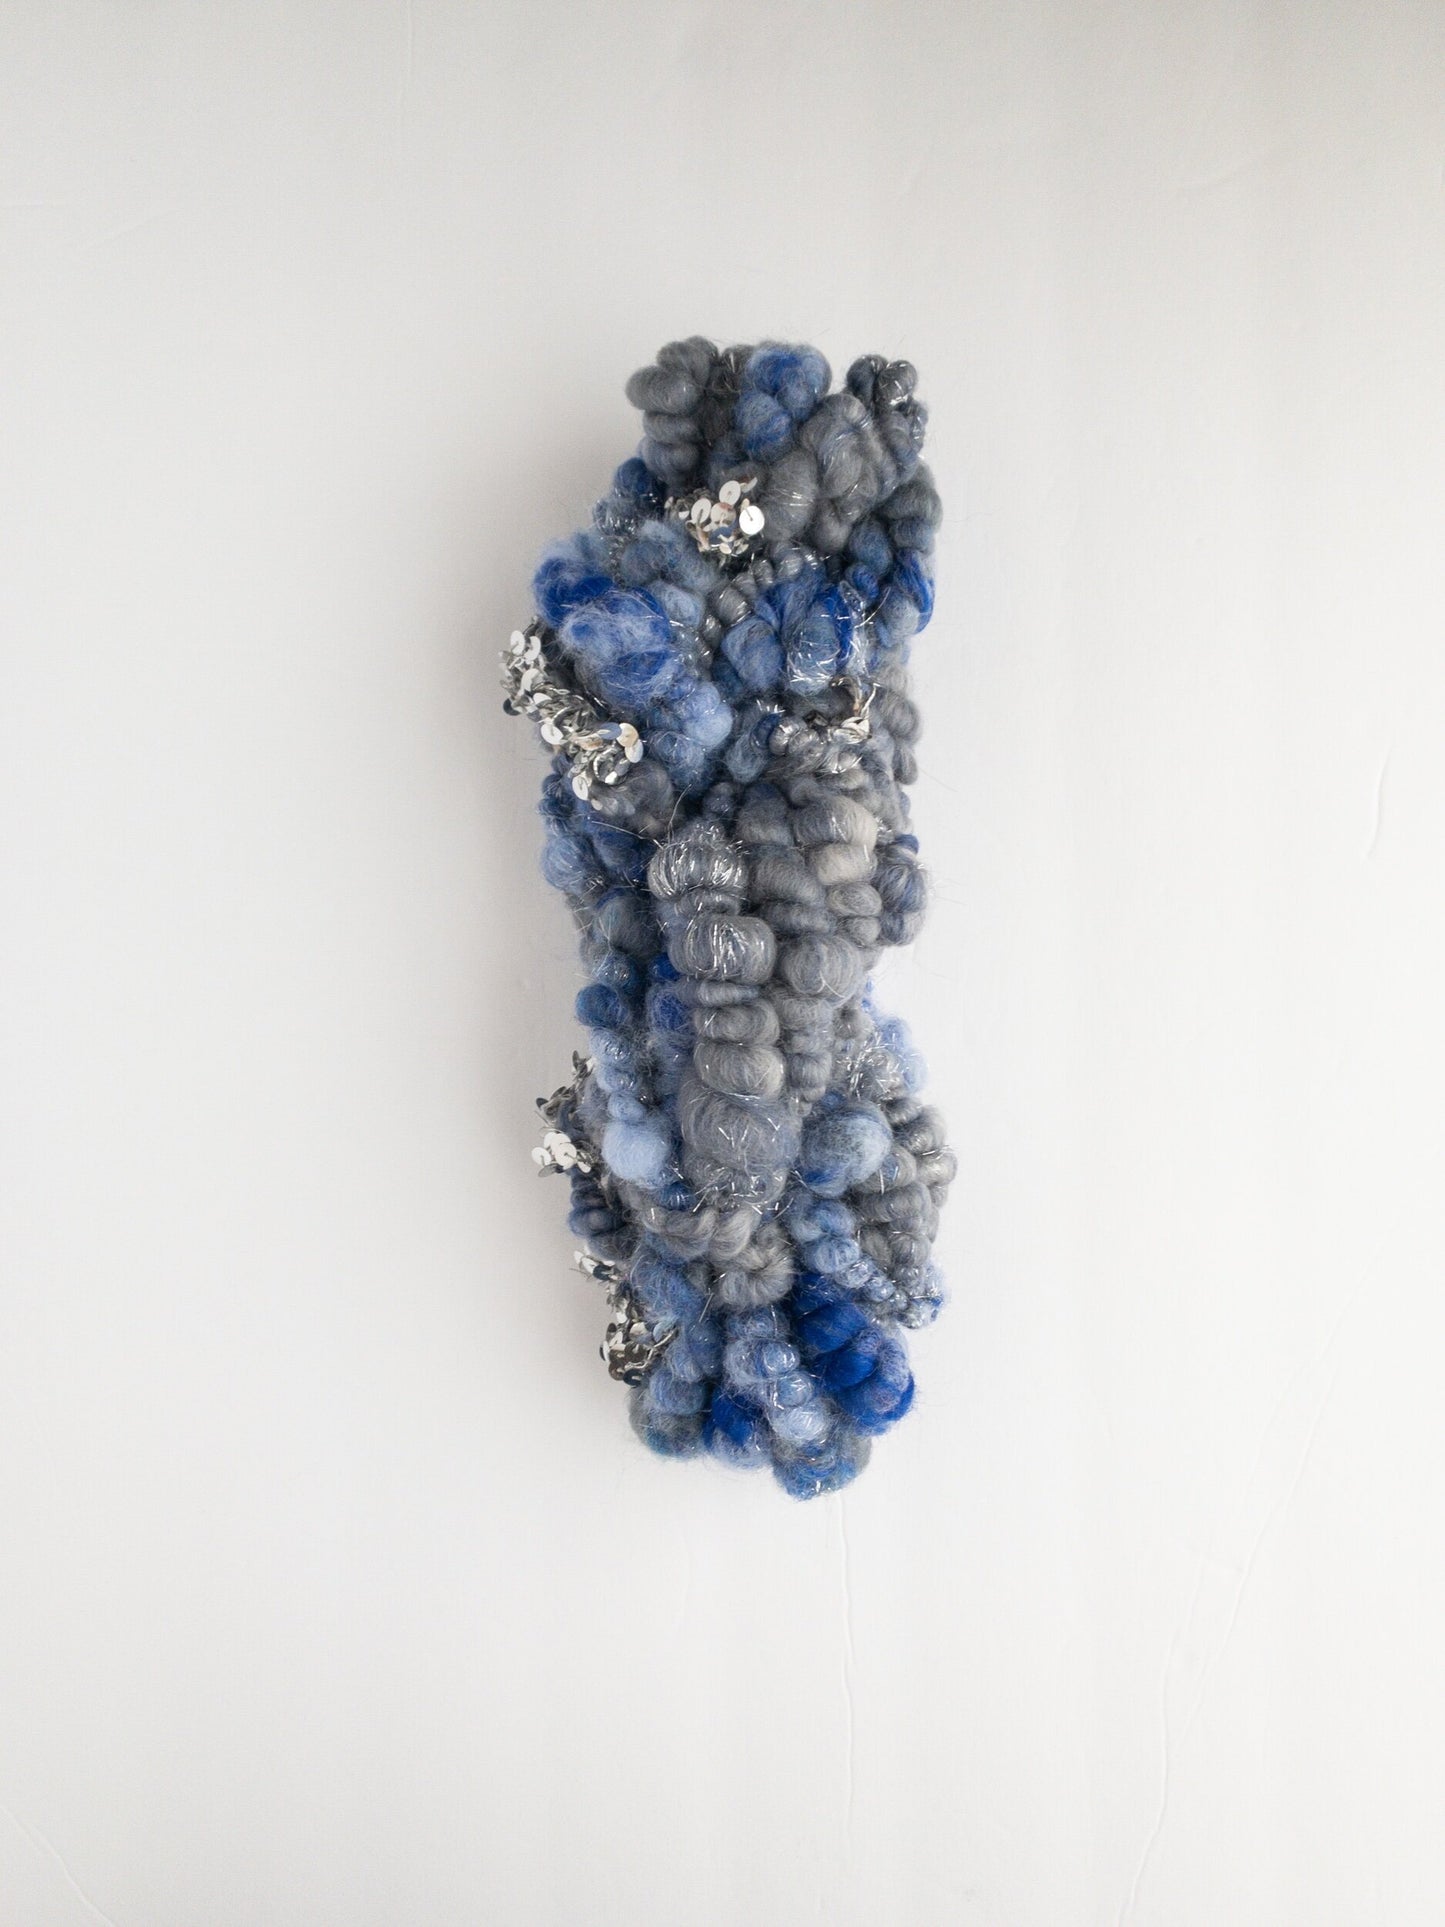 Midnight blue sequin handspun art yarn